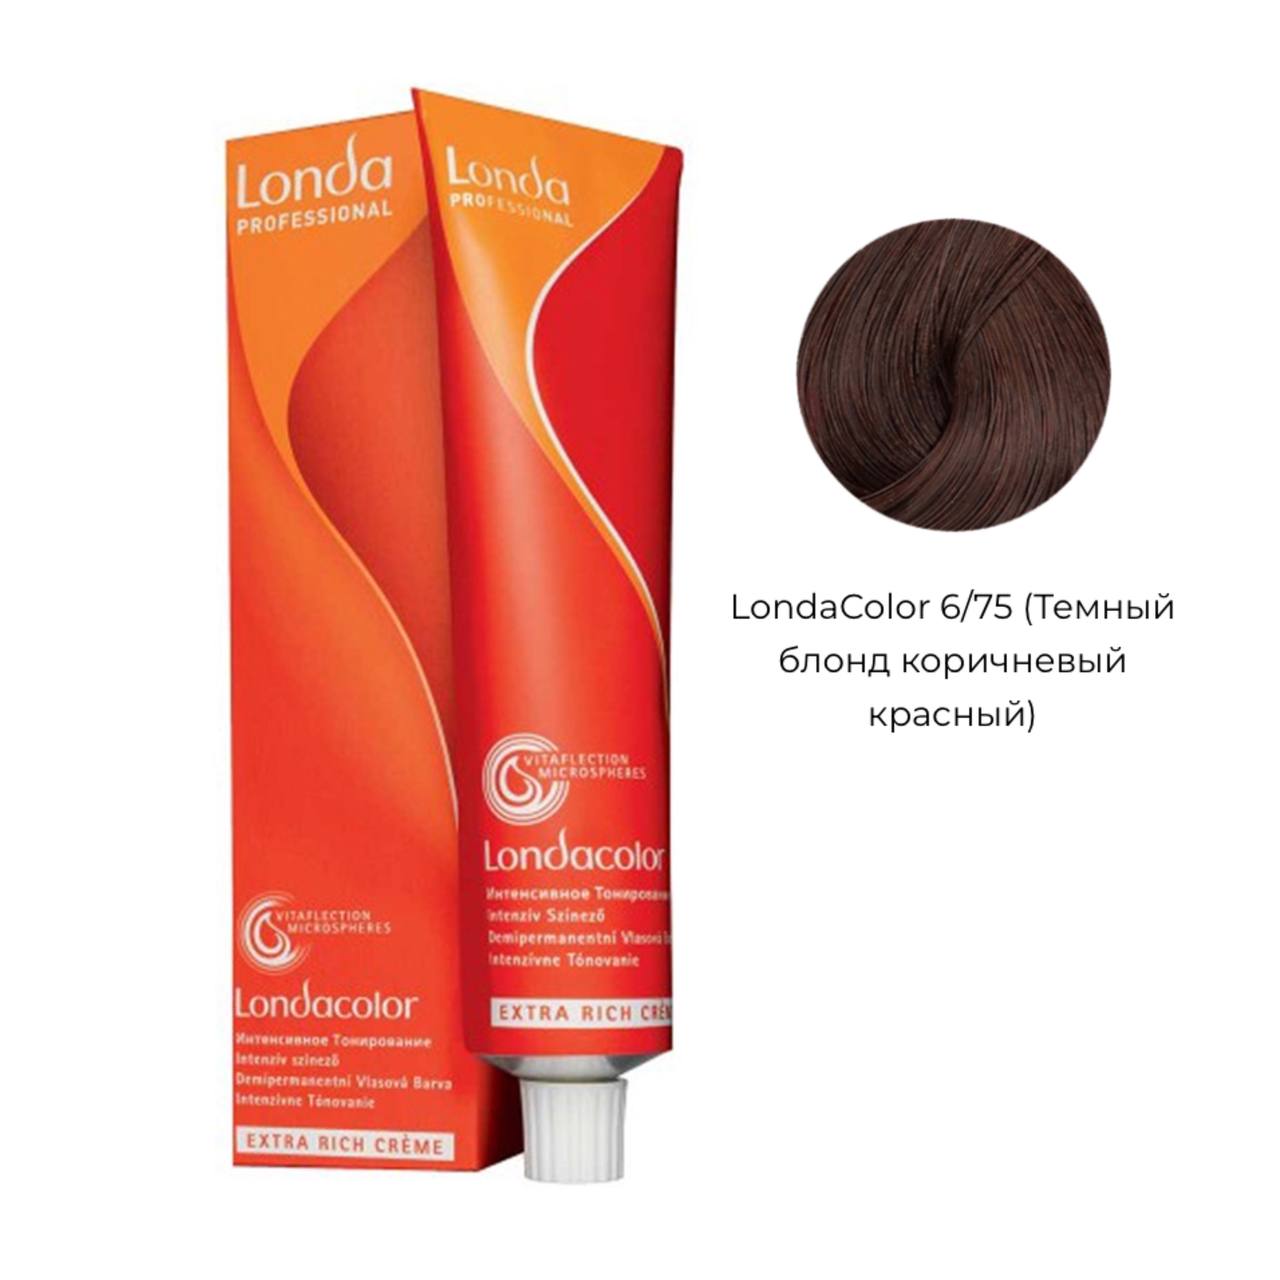 Деми-перманентная крем-краска для волос Темный блонд коричнево-красный - Londa Professional Demi Permanent Ammonia Free 6/75, 60 ml